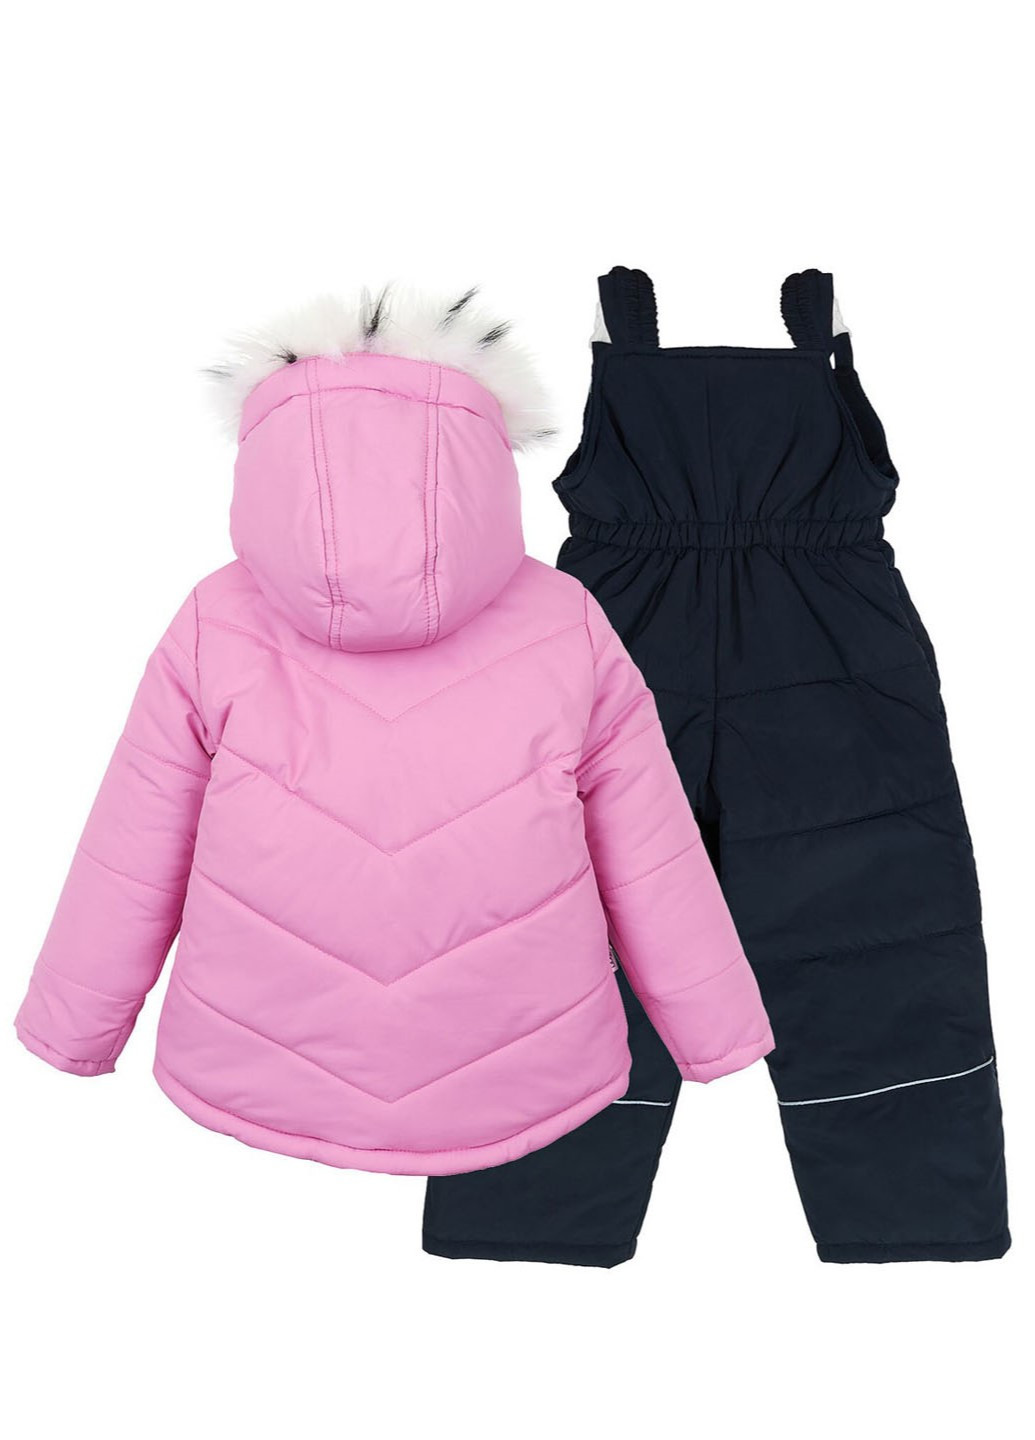 Розовый зимний комплект (куртка, полукомбинезон) Модняшки